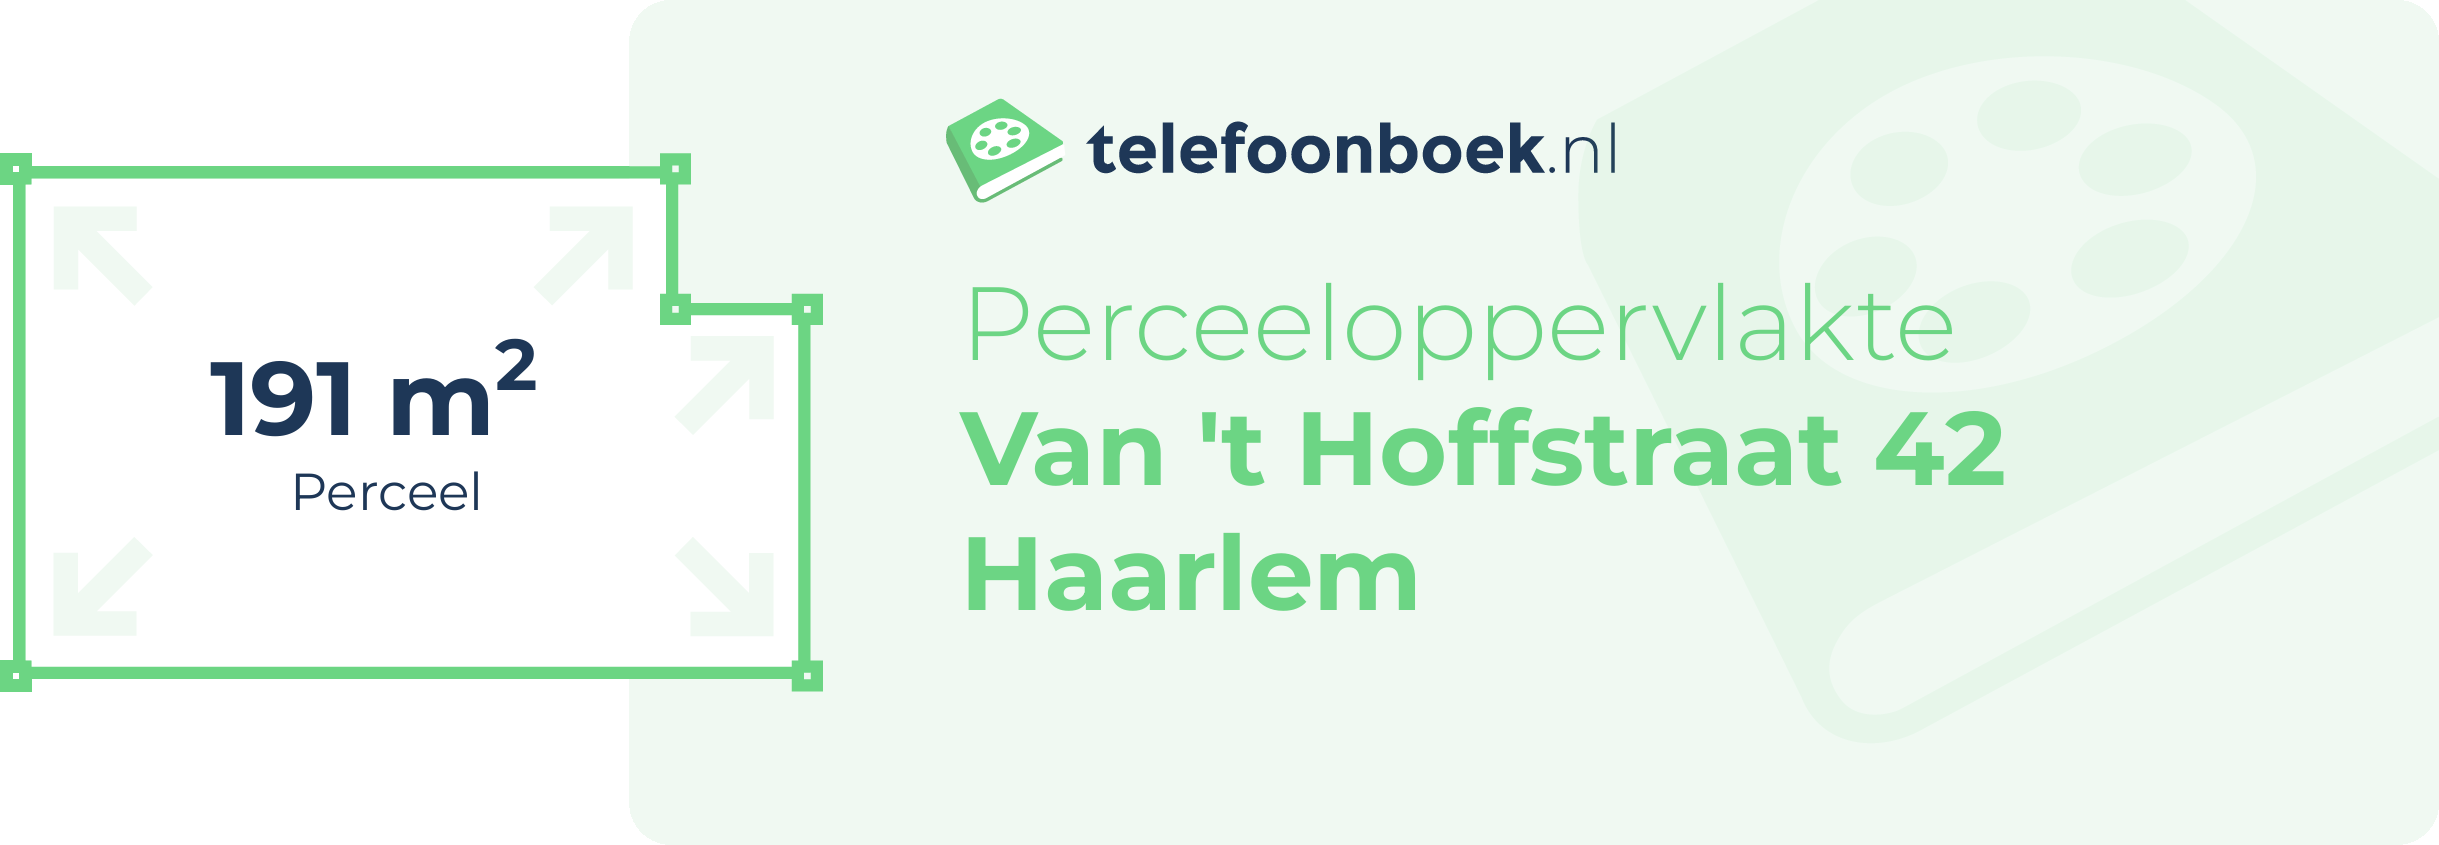 Perceeloppervlakte Van 't Hoffstraat 42 Haarlem